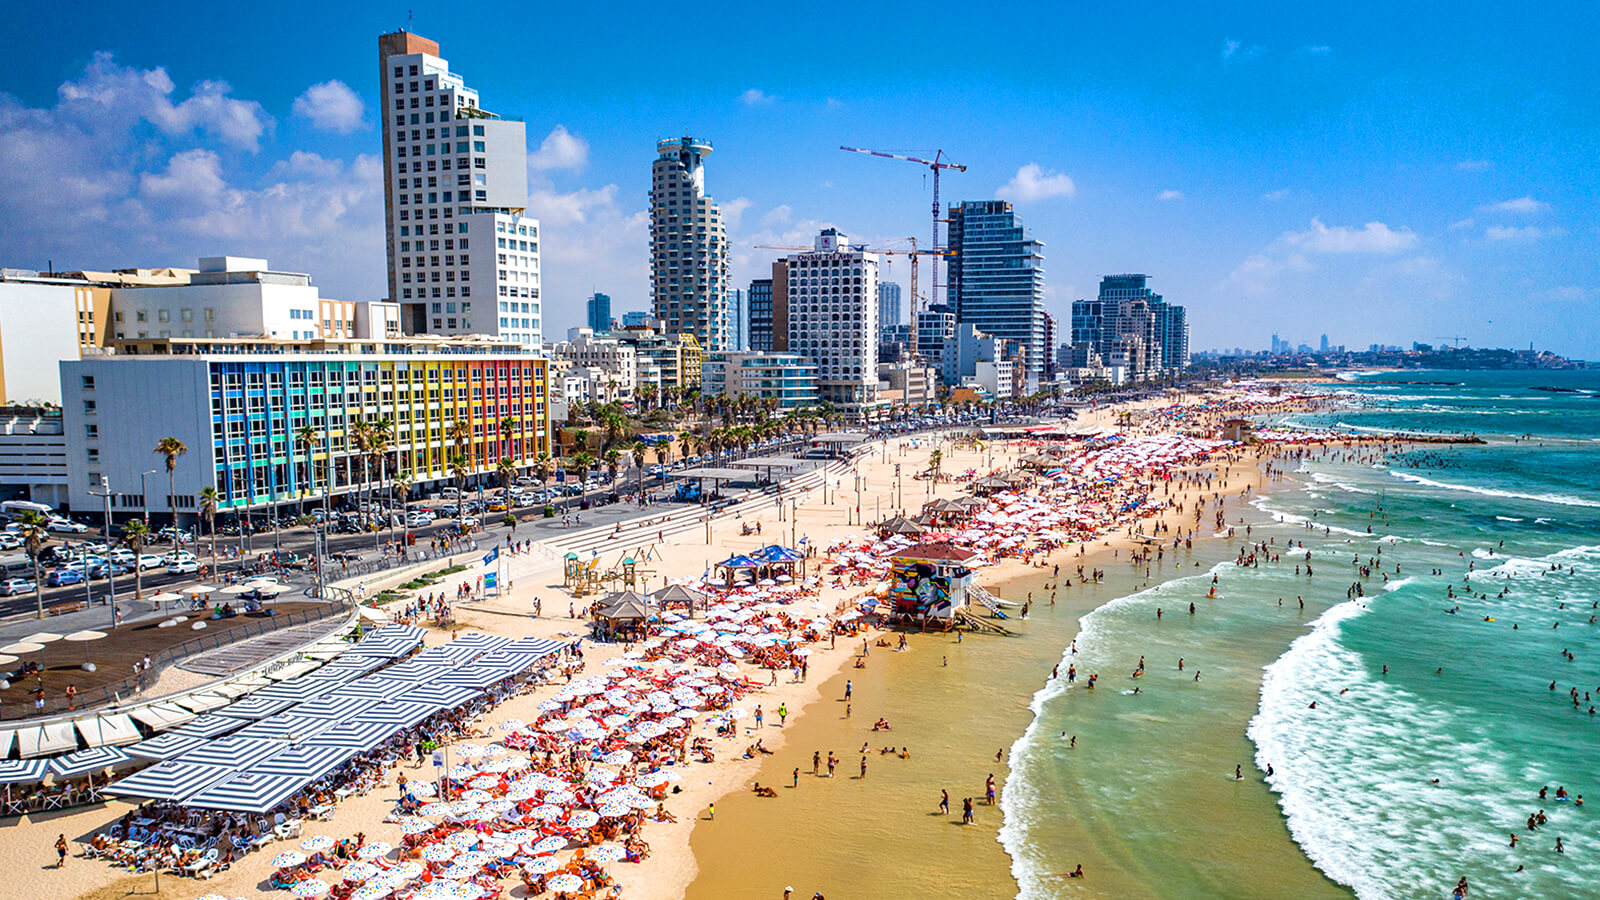 Image of Tel Aviv, Israel/At Sea